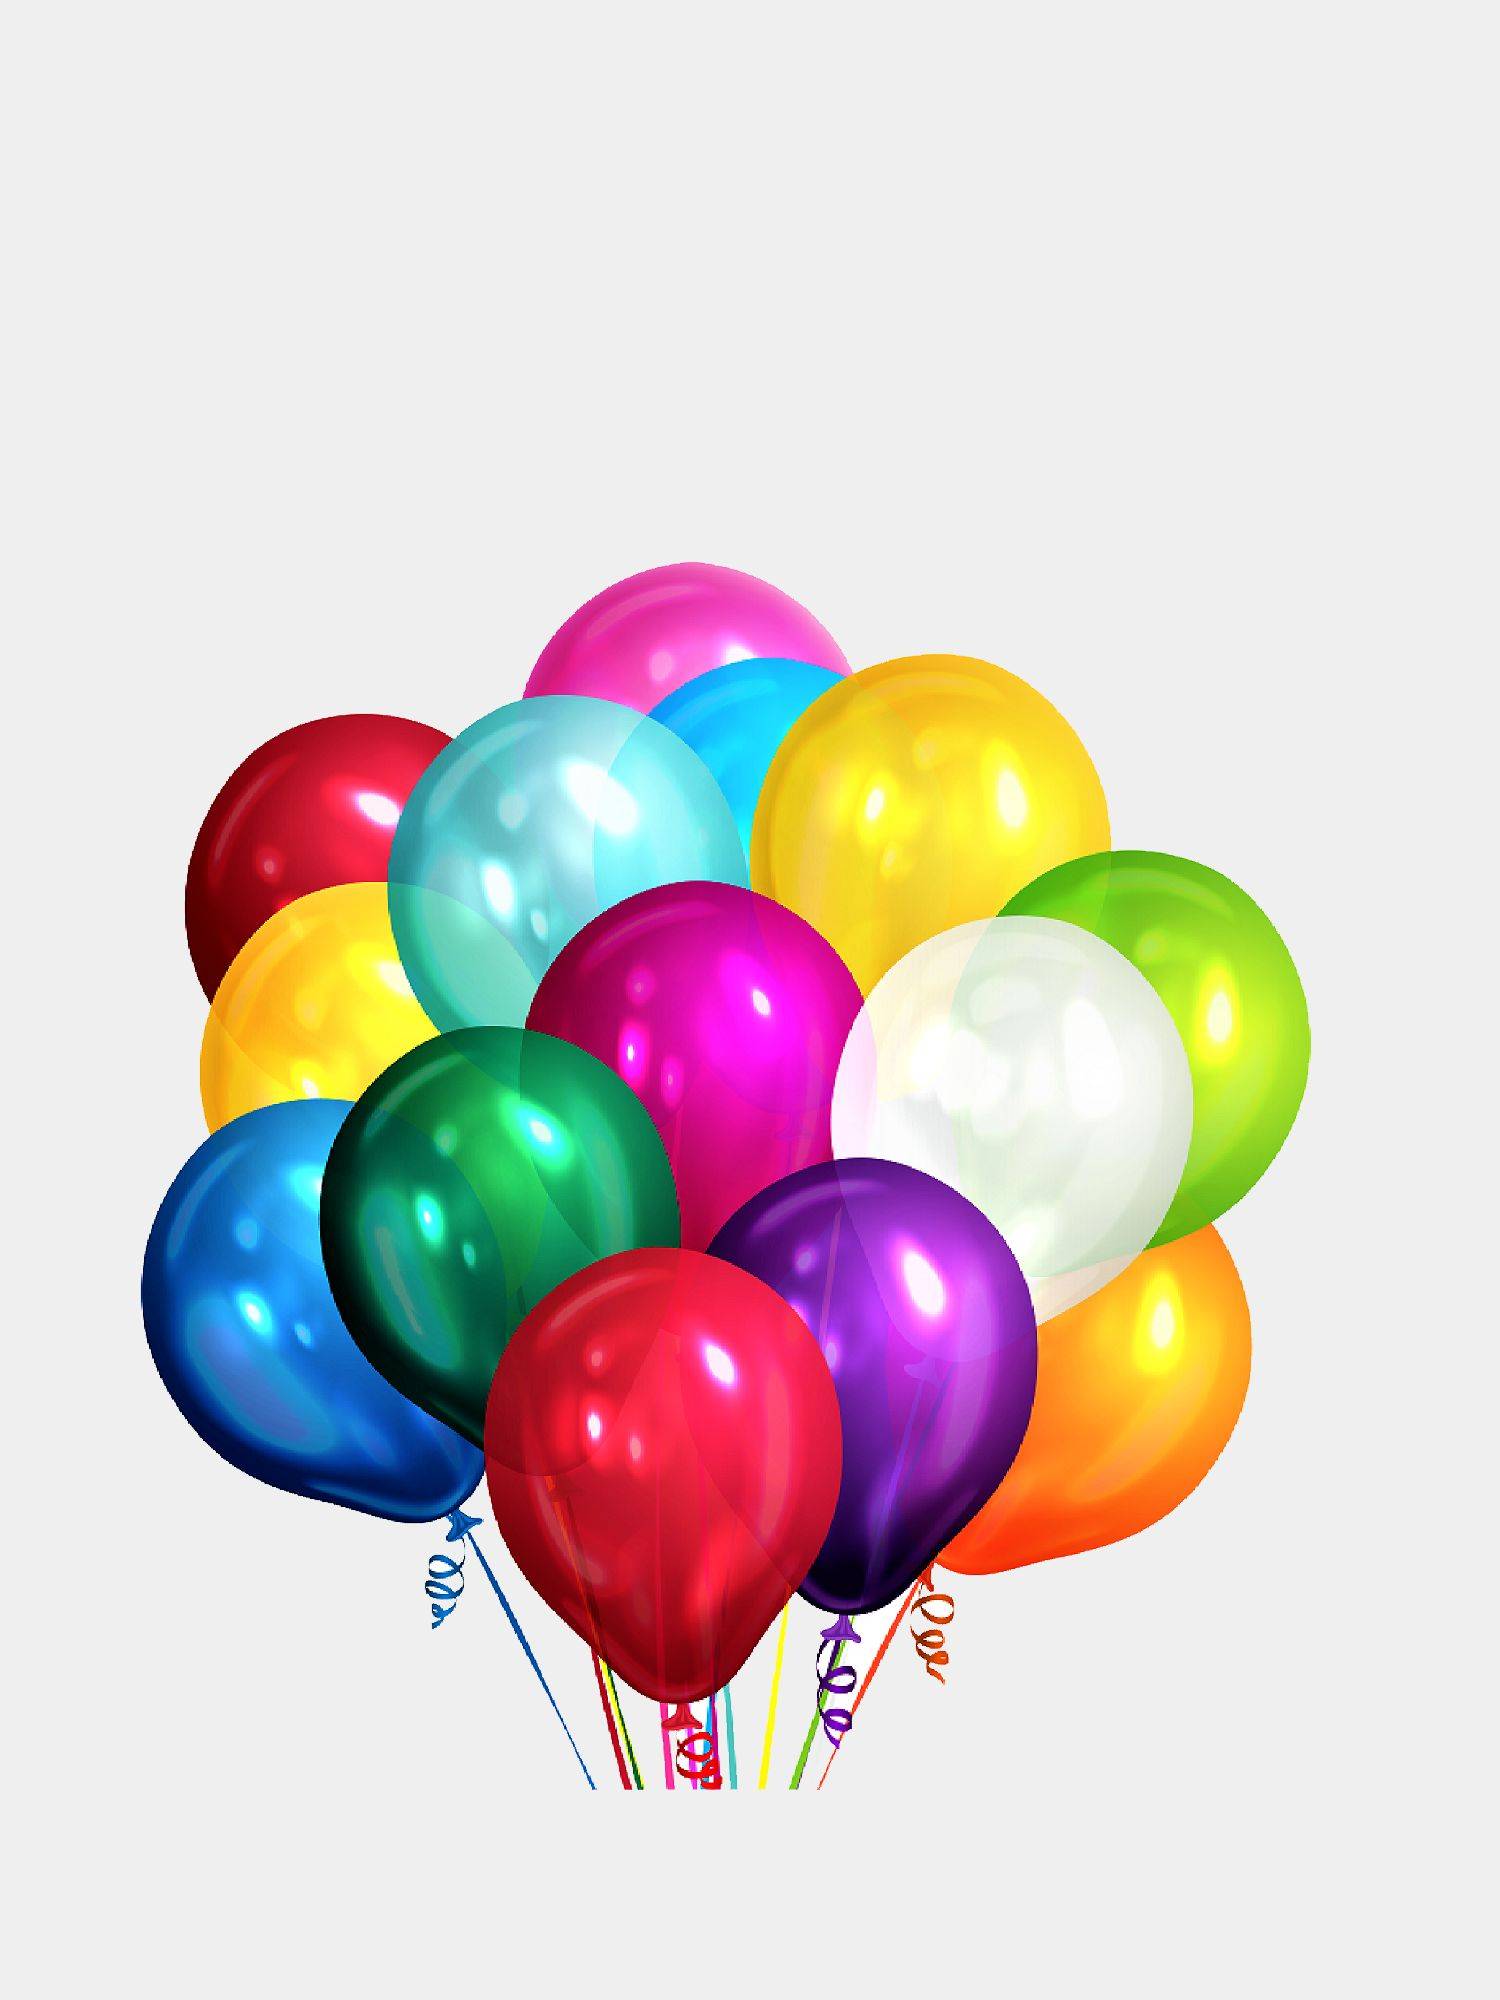 Модели воздушных шаров. Воздушный шарик. Разноцветные воздушные шары. Разноцветные шары гелиевые. Шары без фона.